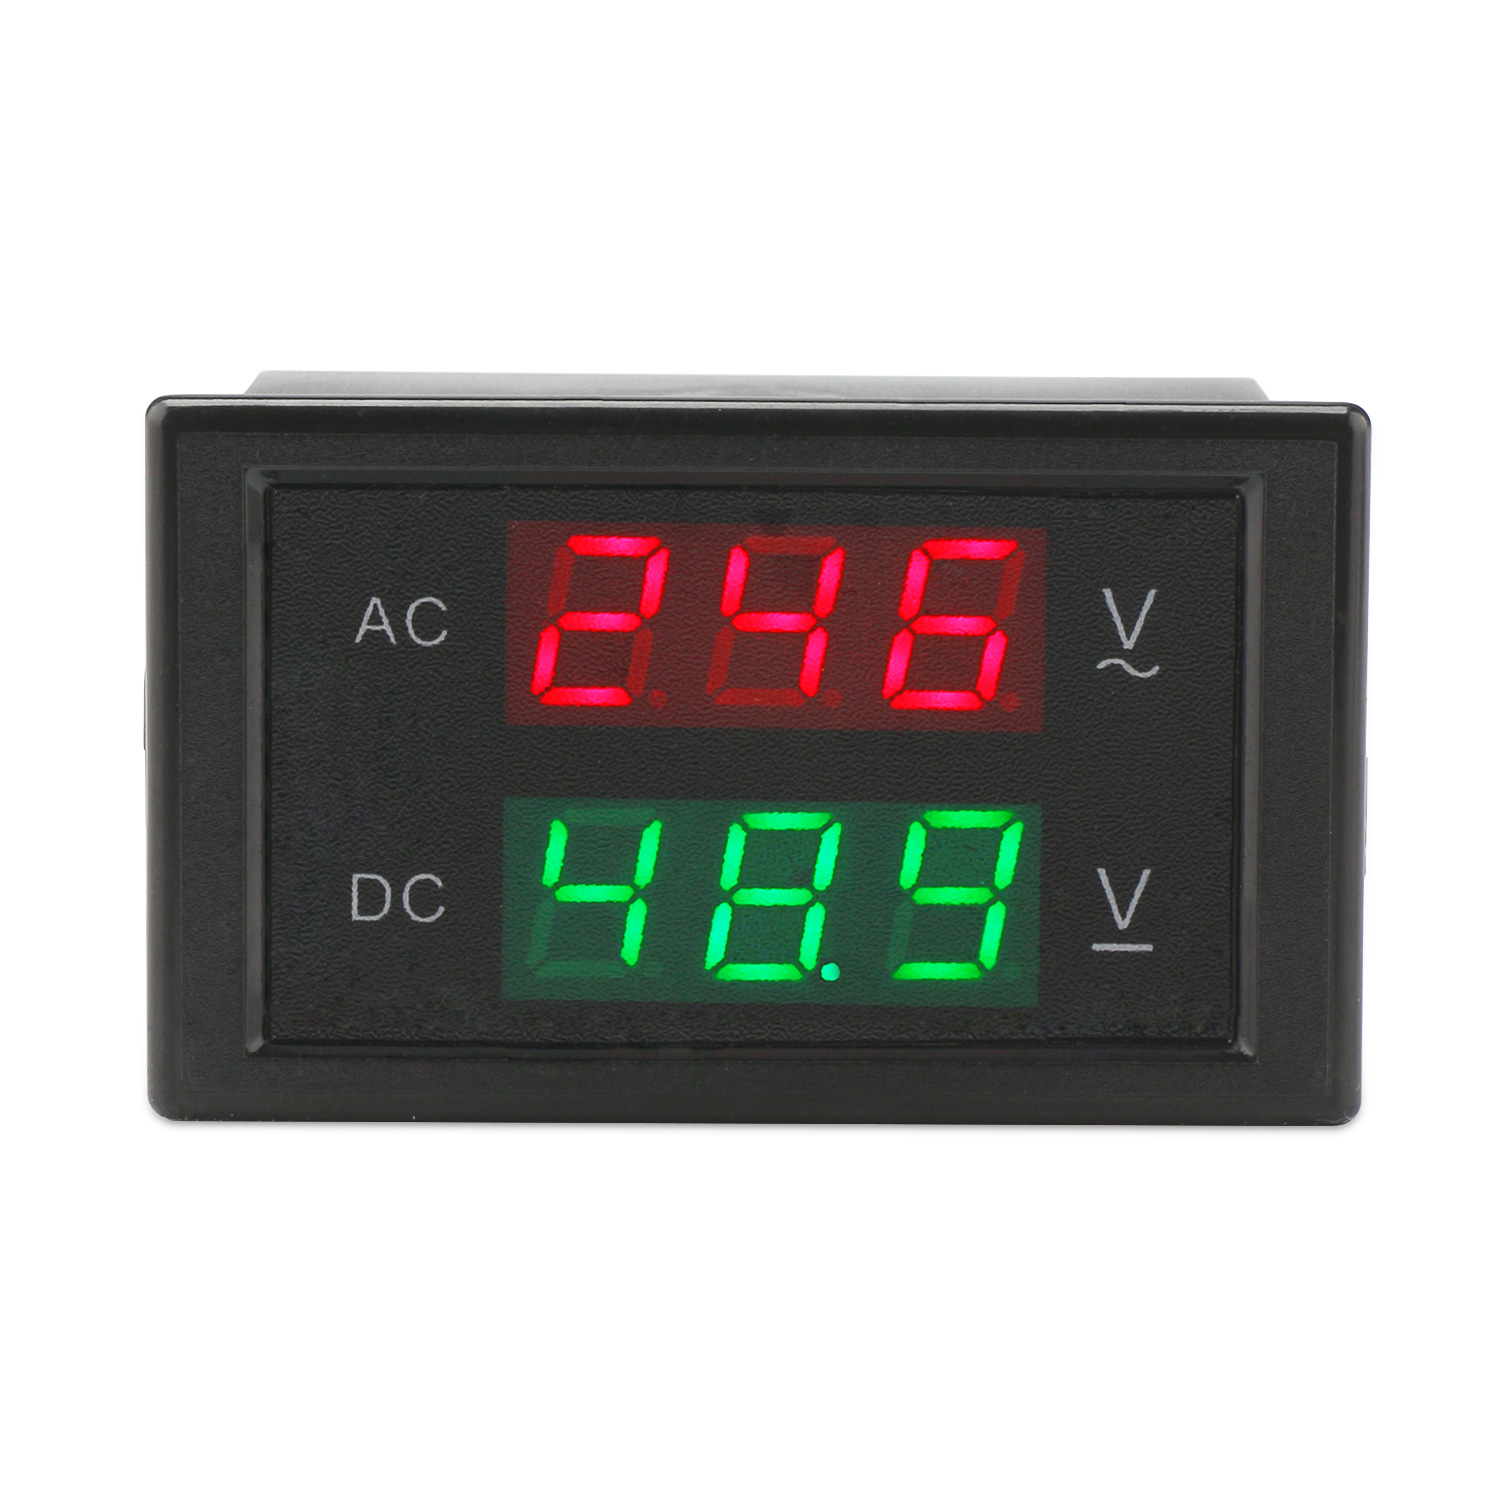 DC 0-99.9V LED Panel Digital Voltmeter w/ Alarm Indicator  Green 3 way